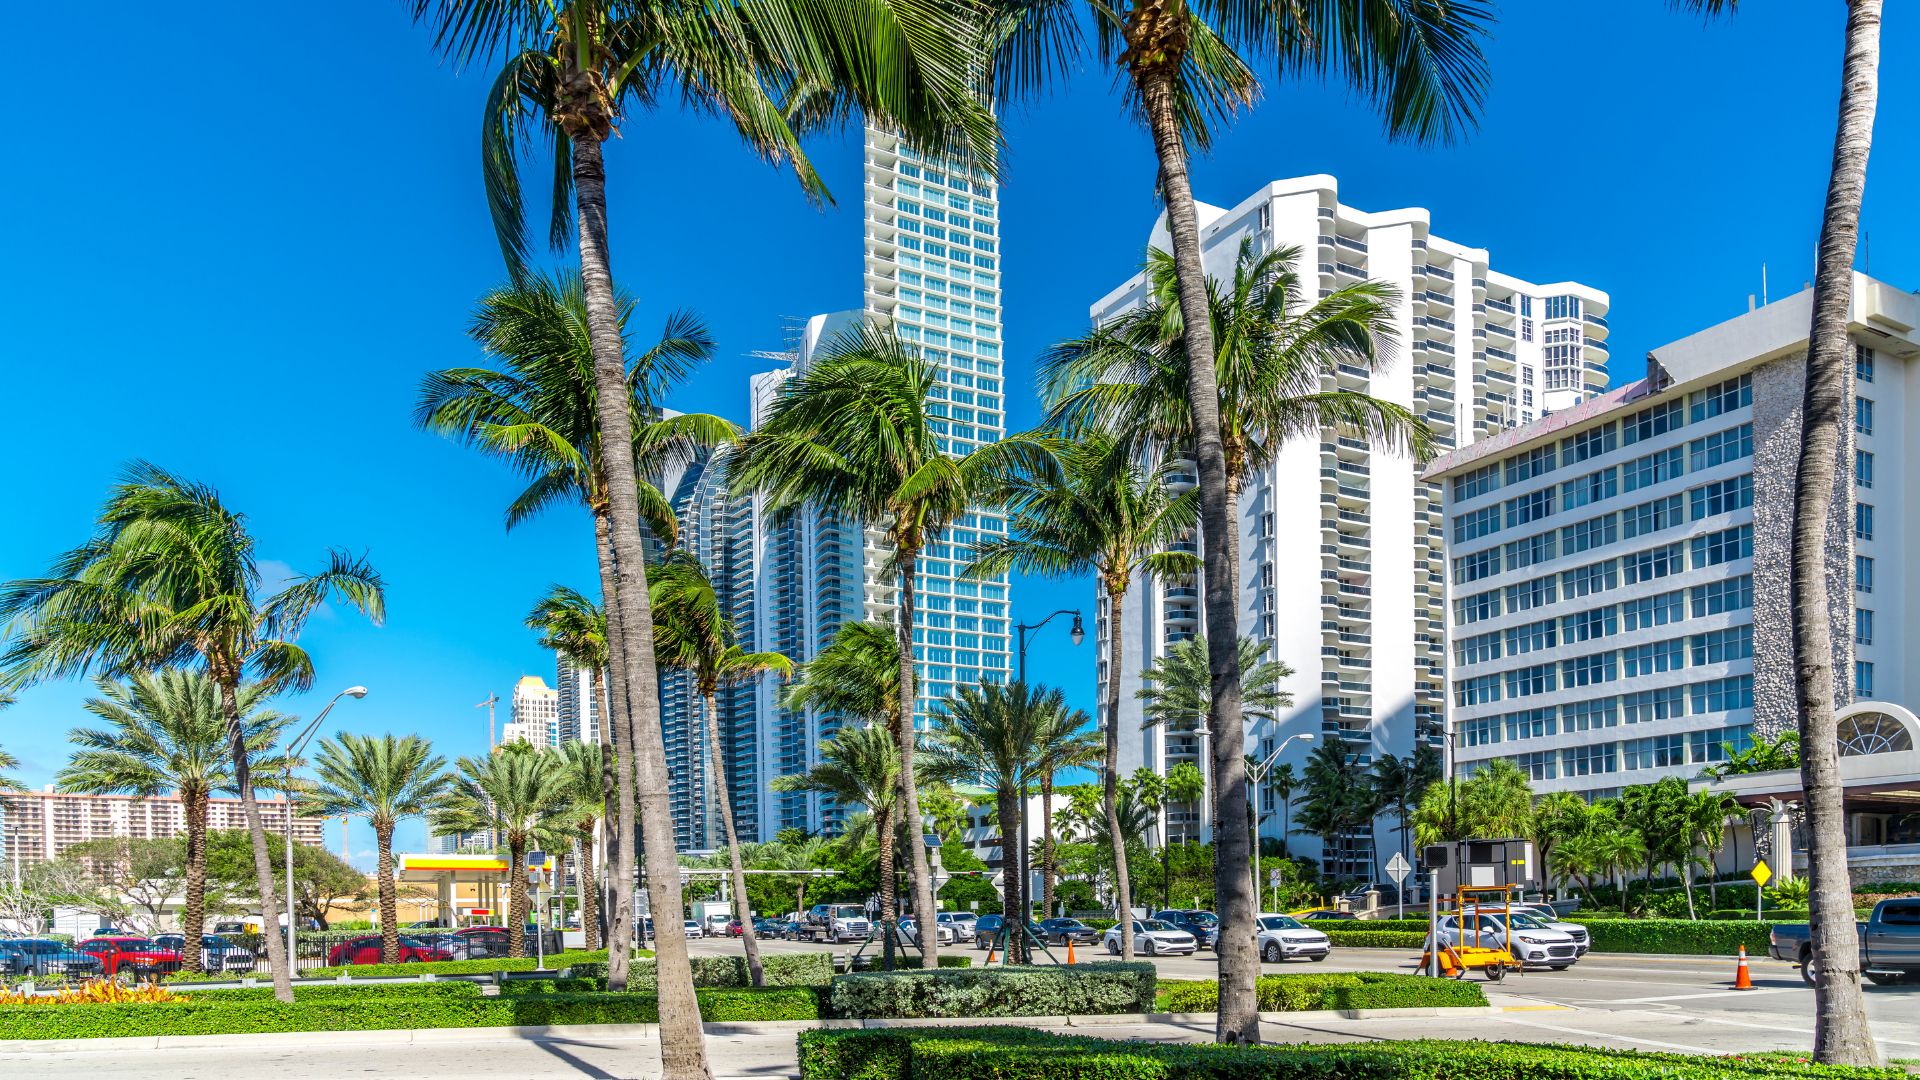 4. Miami, Florida